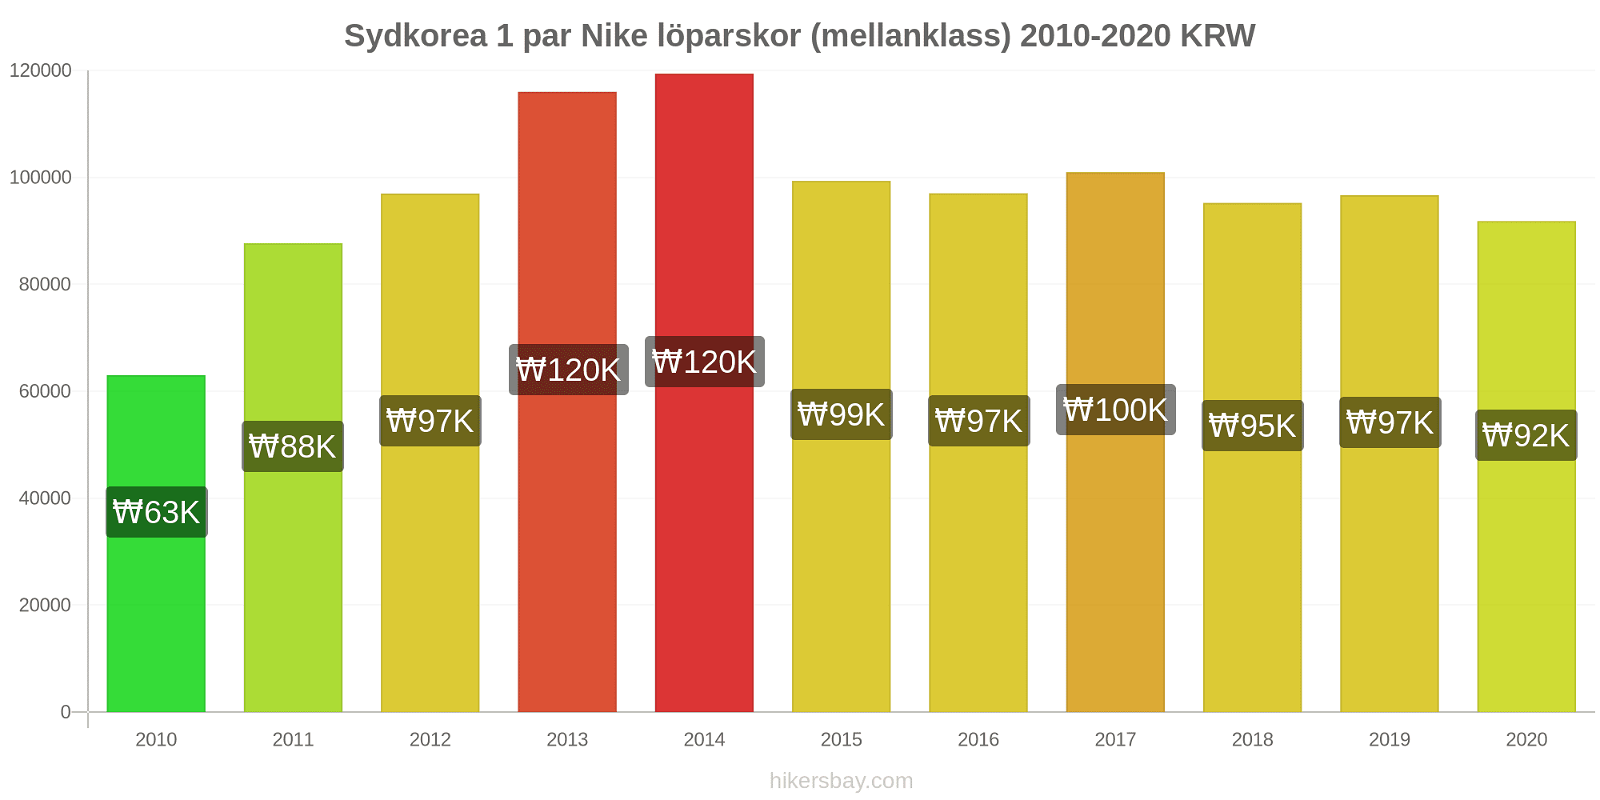 Sydkorea prisförändringar 1 par Nike löparskor (mellanklass) hikersbay.com